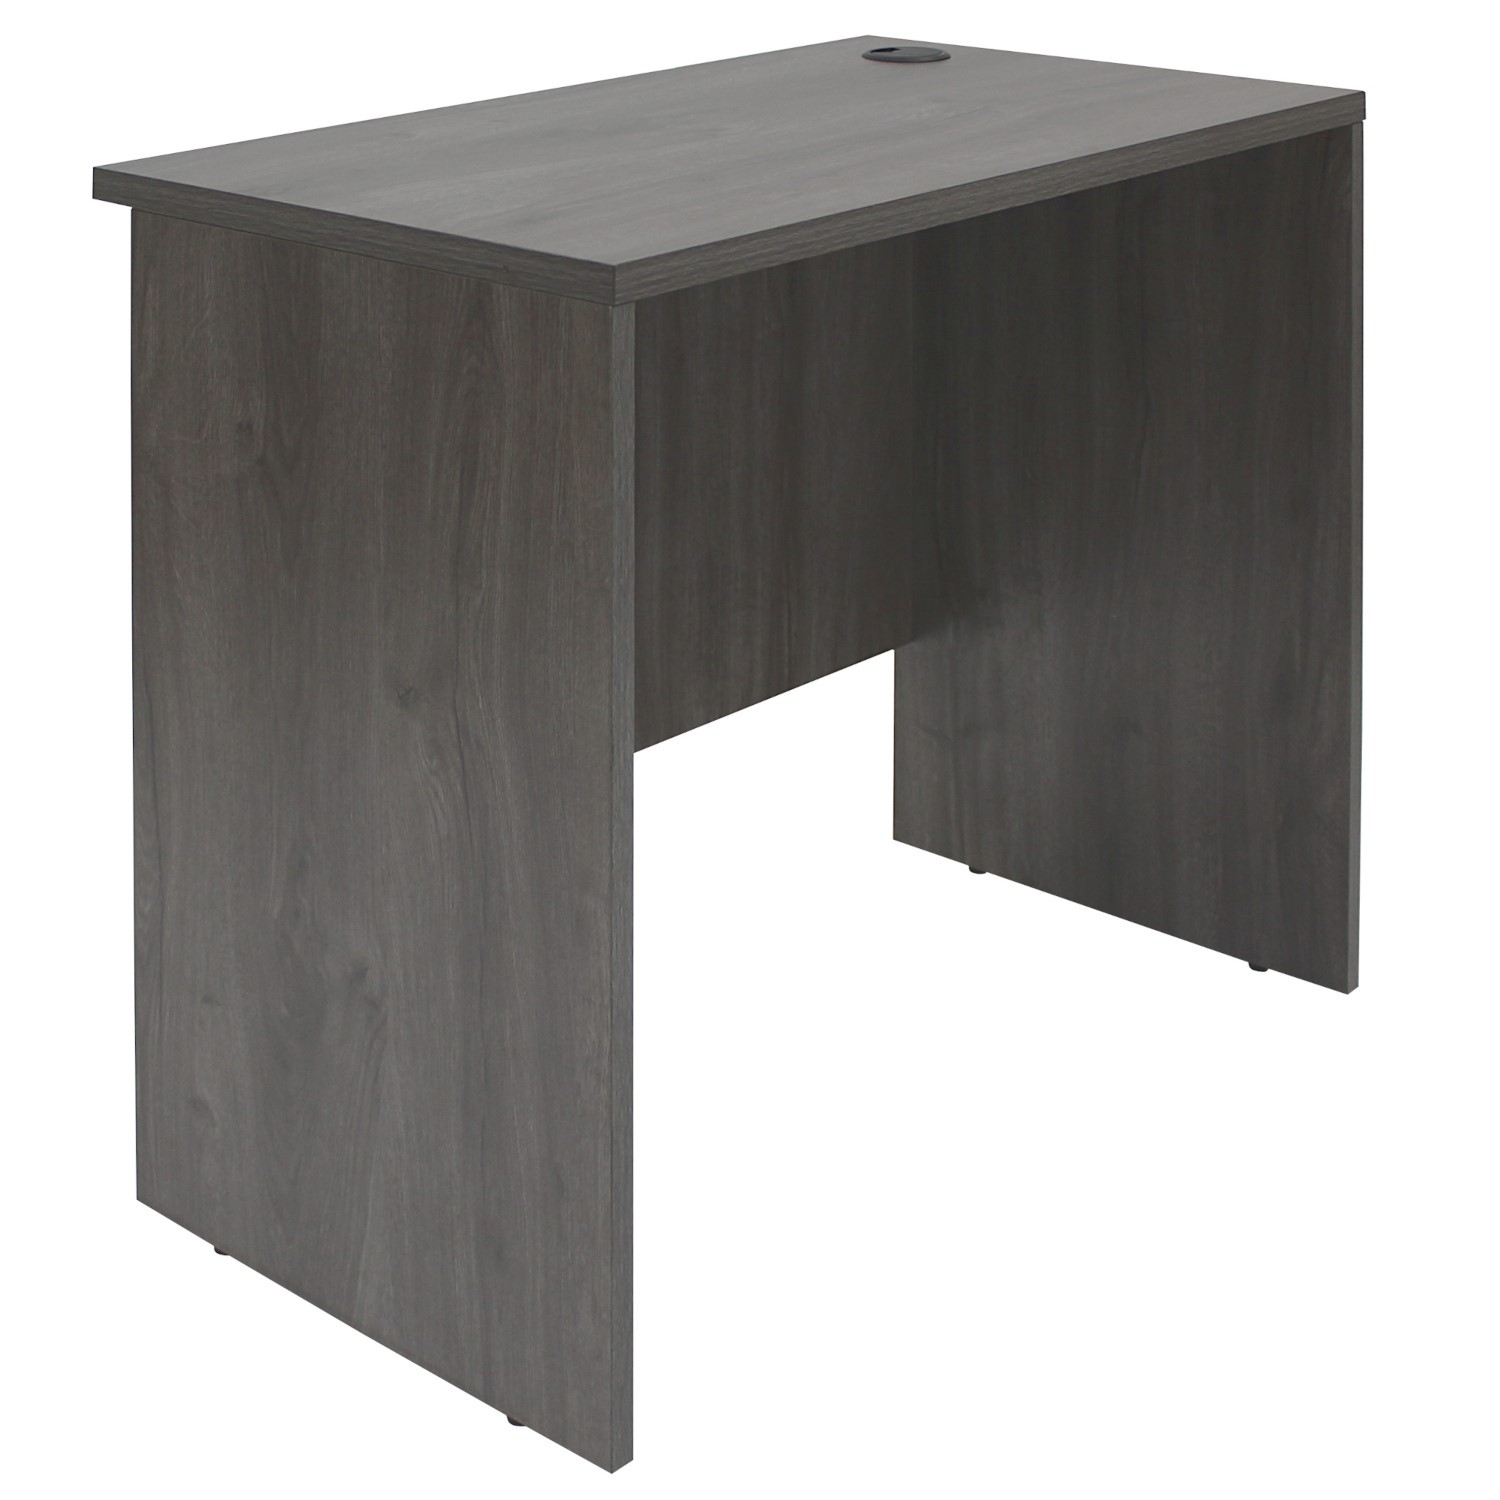 Read more about Medium dark grey washed oak office desk denver